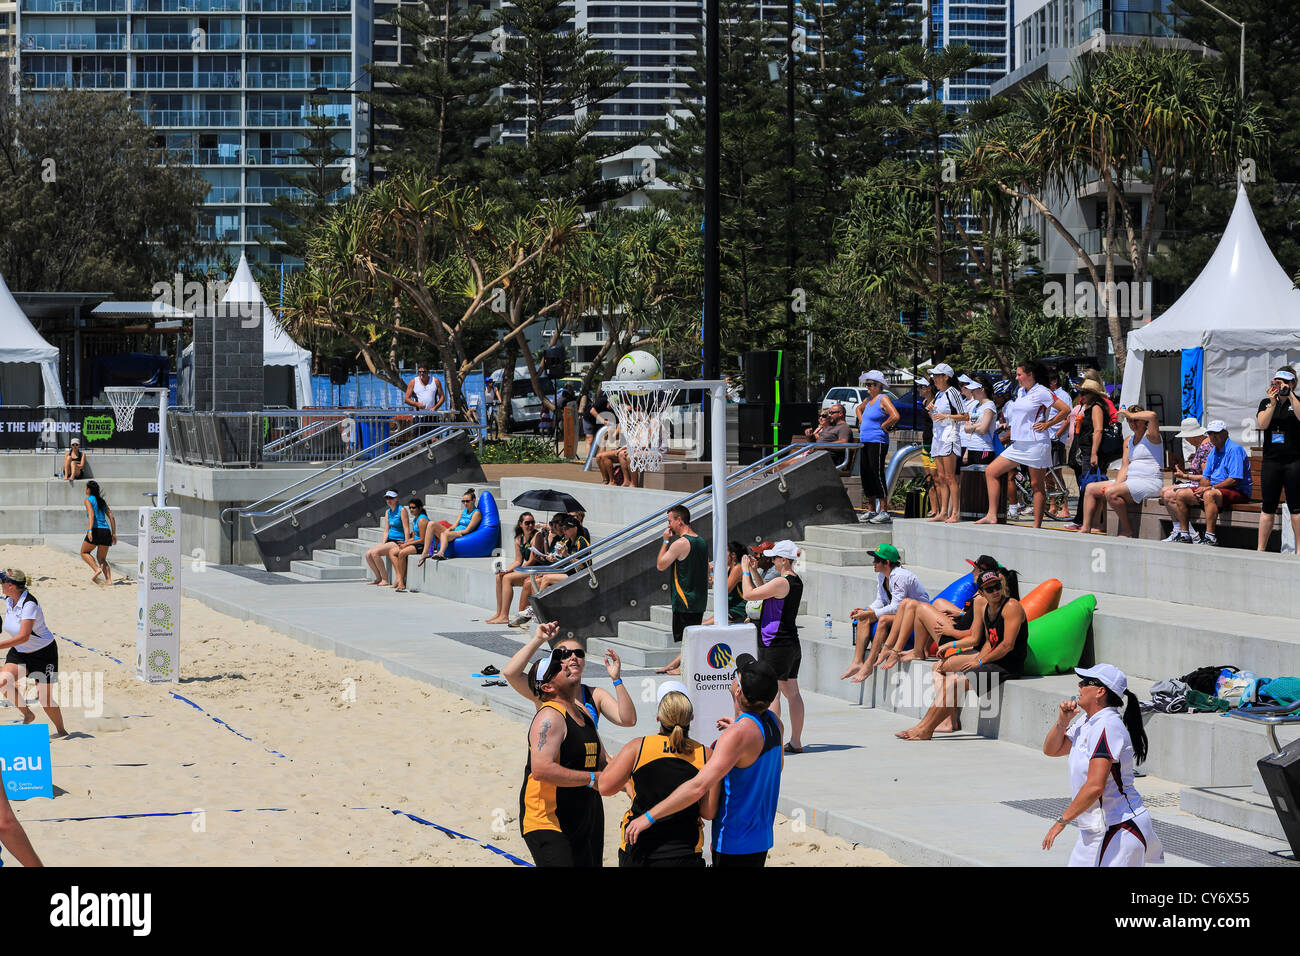 Le jeu est sur la plage au netball à Surfers Paradise Beach pour la première fois dans le cadre de ce tournage hors du traditionnel sport Banque D'Images